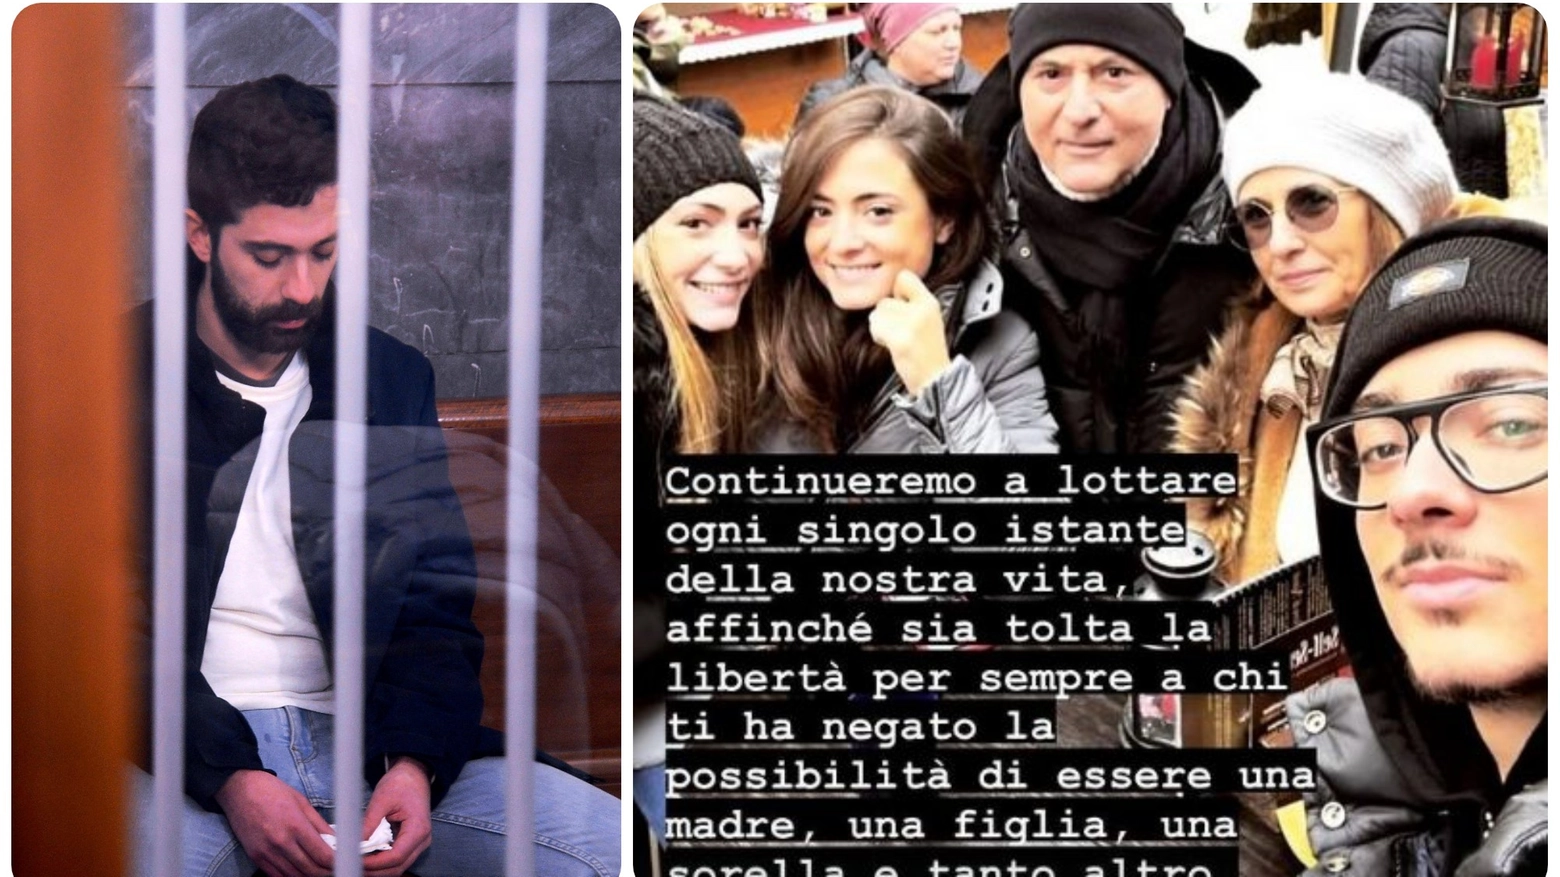 Alessandro Impagnatiello e Giulia insieme alla sua famiglia (post isntagram)